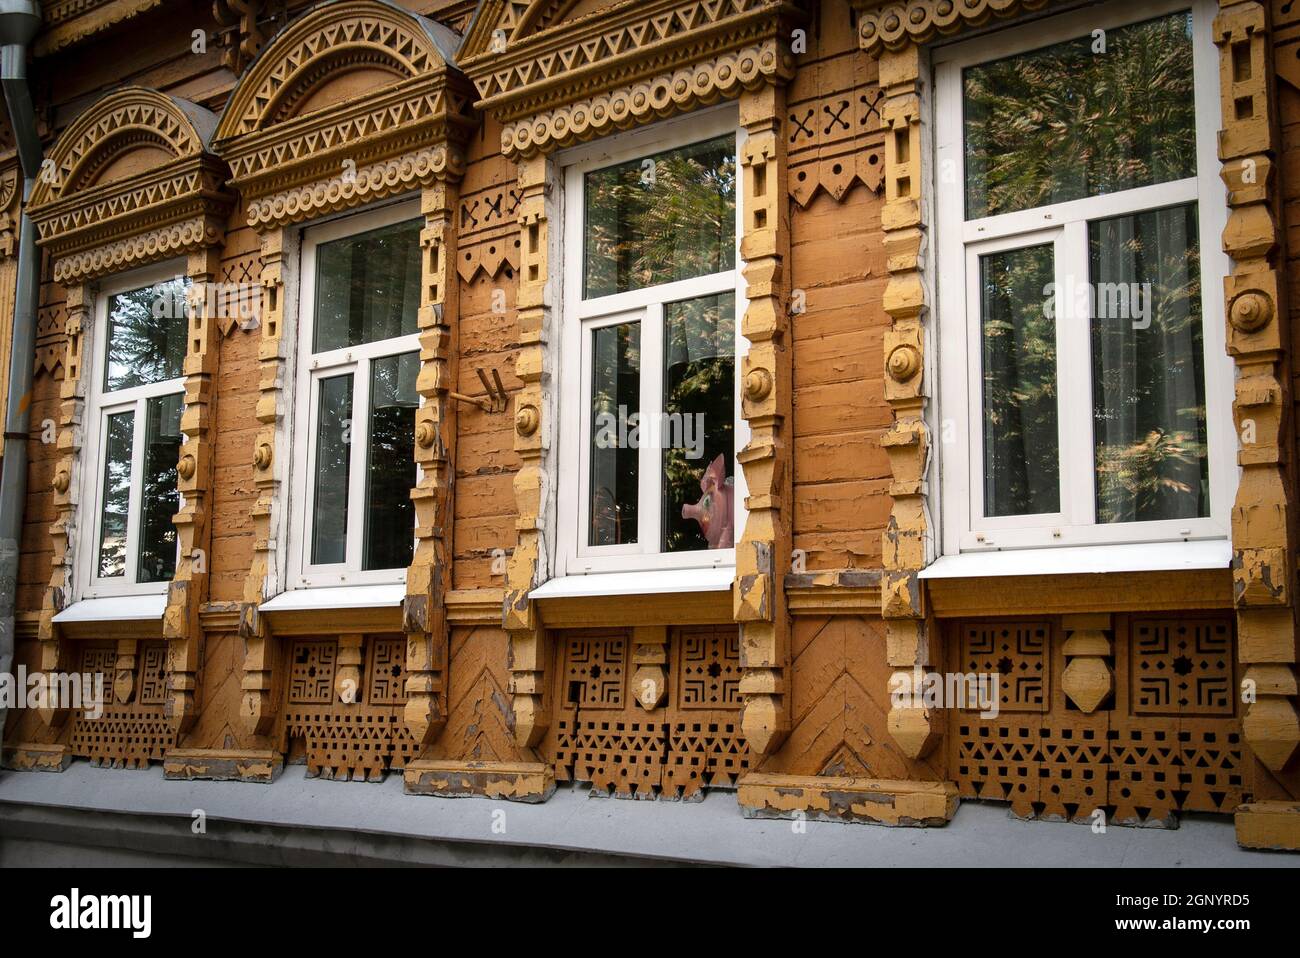 Vecchia casa storica in legno in stile russo con platbands intagliati e una statuetta di un maiale che guarda fuori dalla finestra Foto Stock